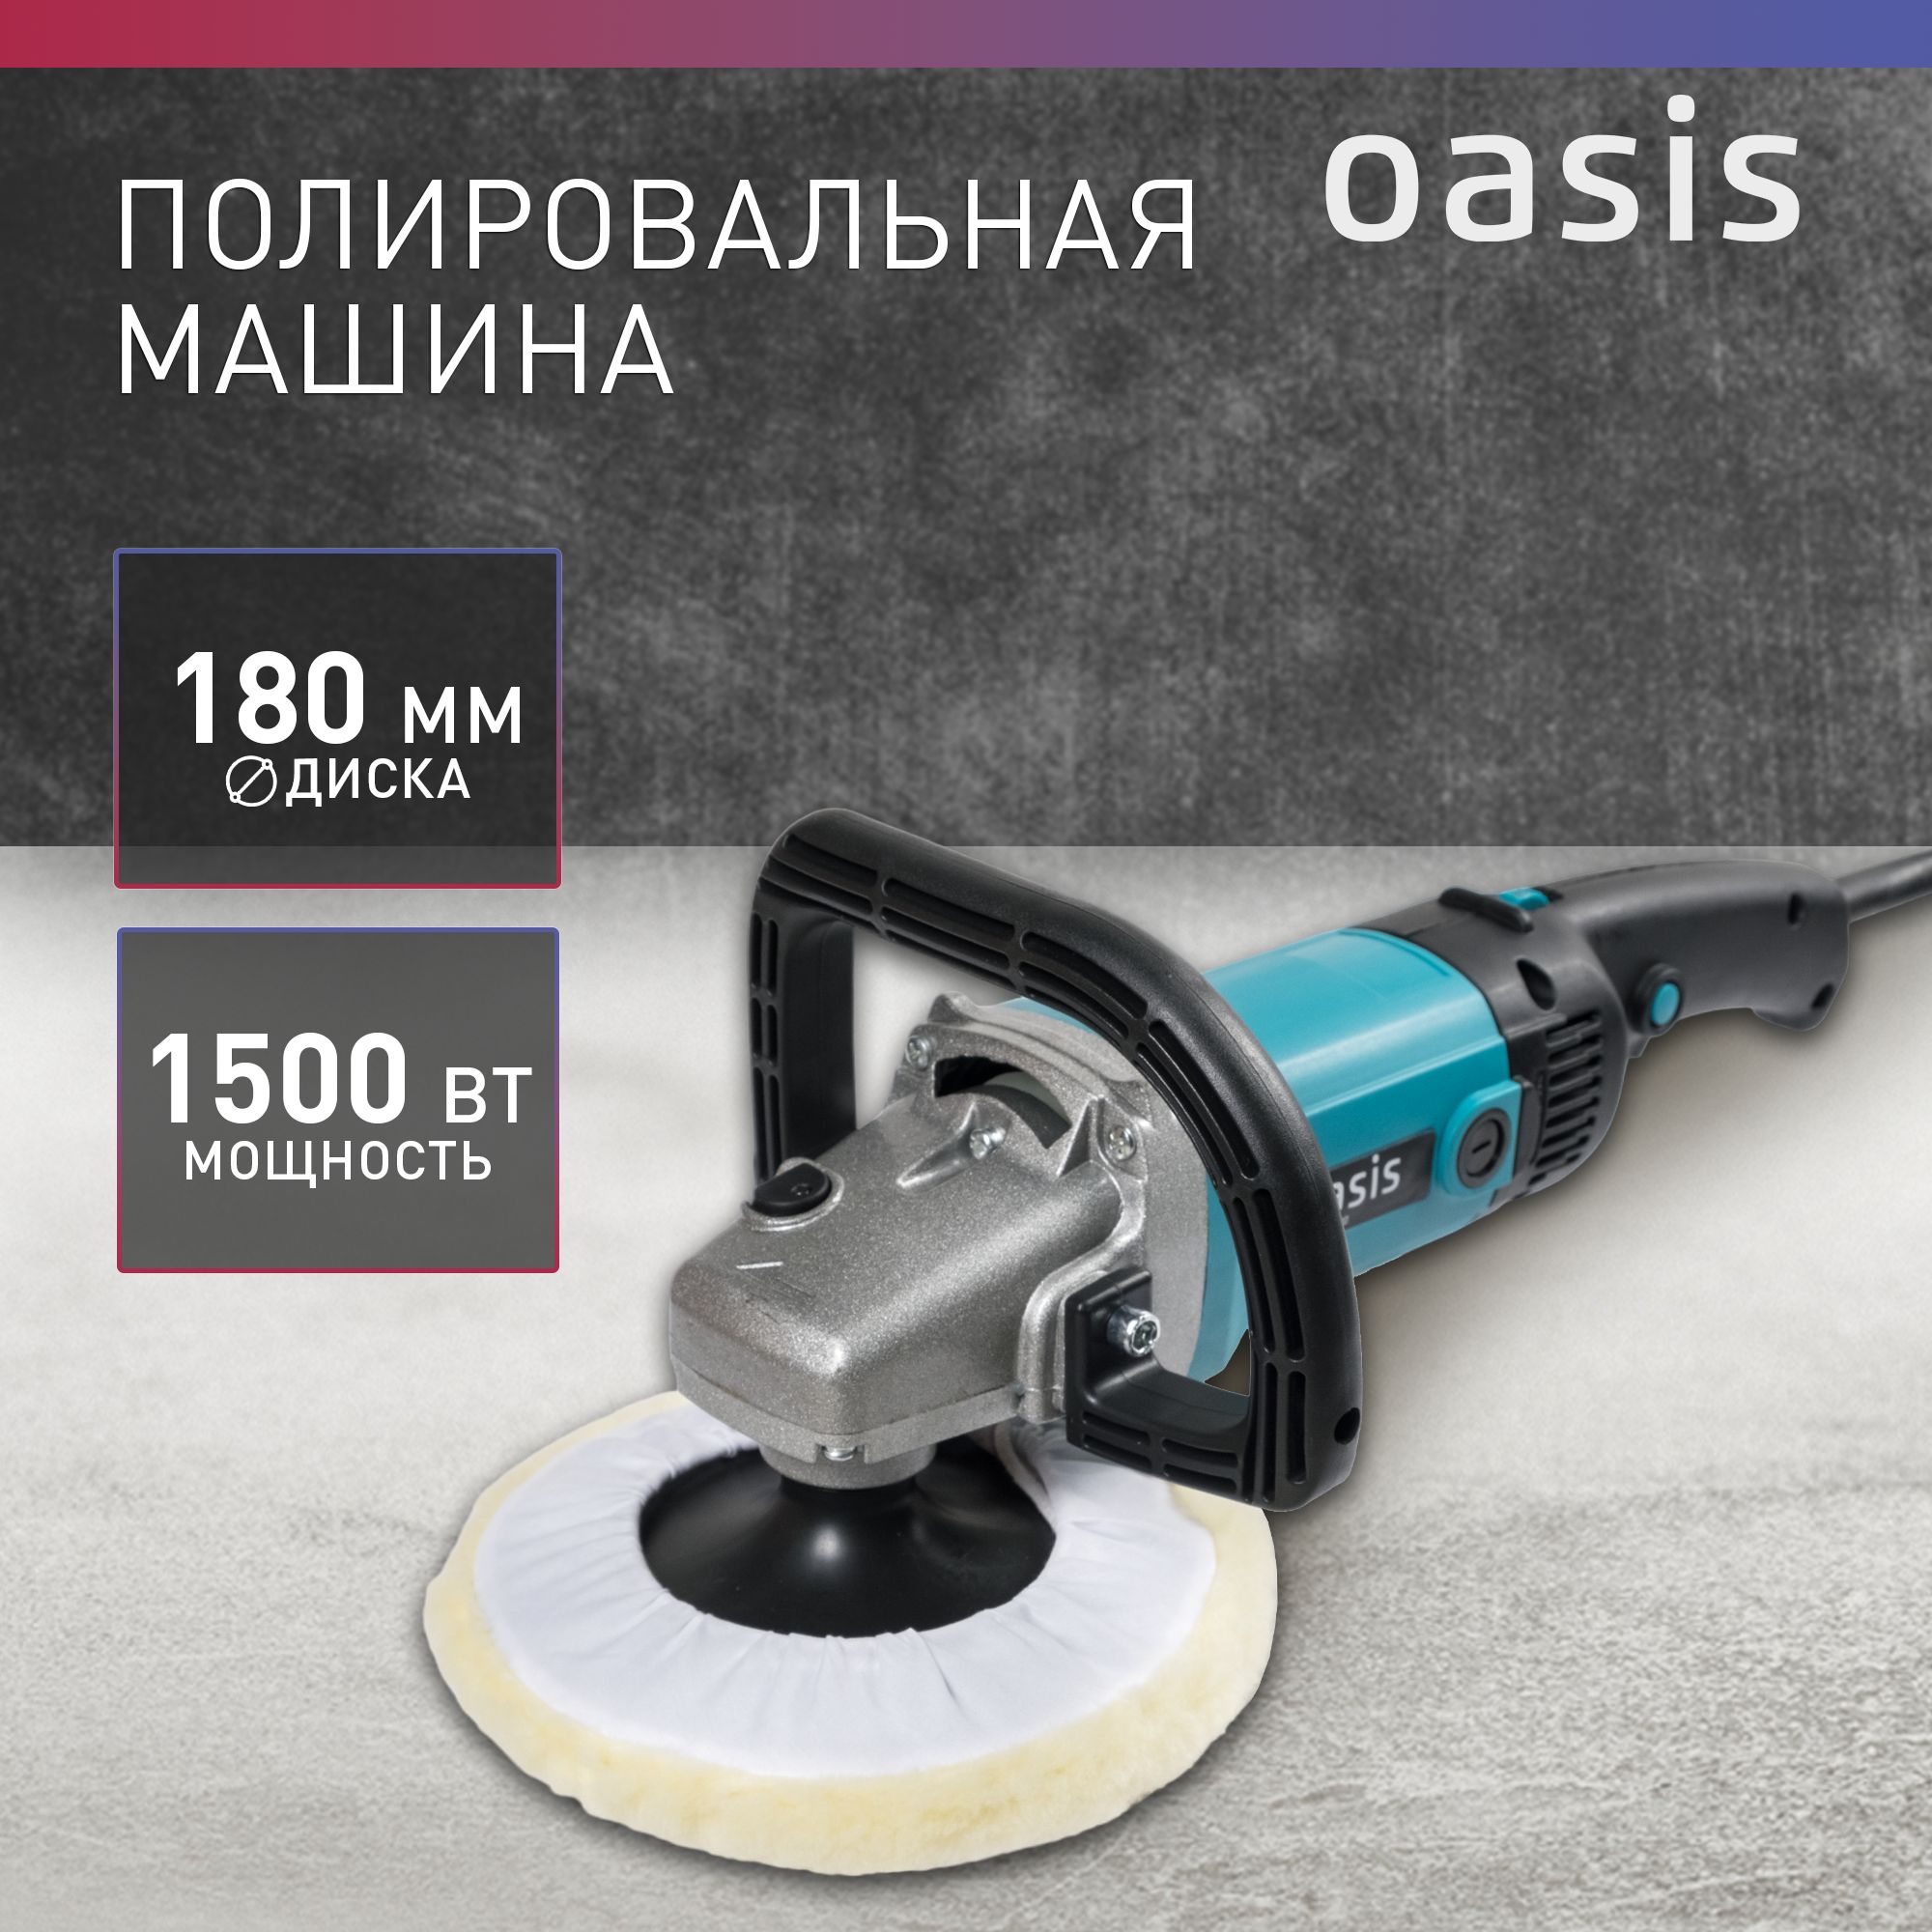 ПолировальнаямашинасетеваяOasisPM-150/180,1500Вт/машинкадляполировкиавто